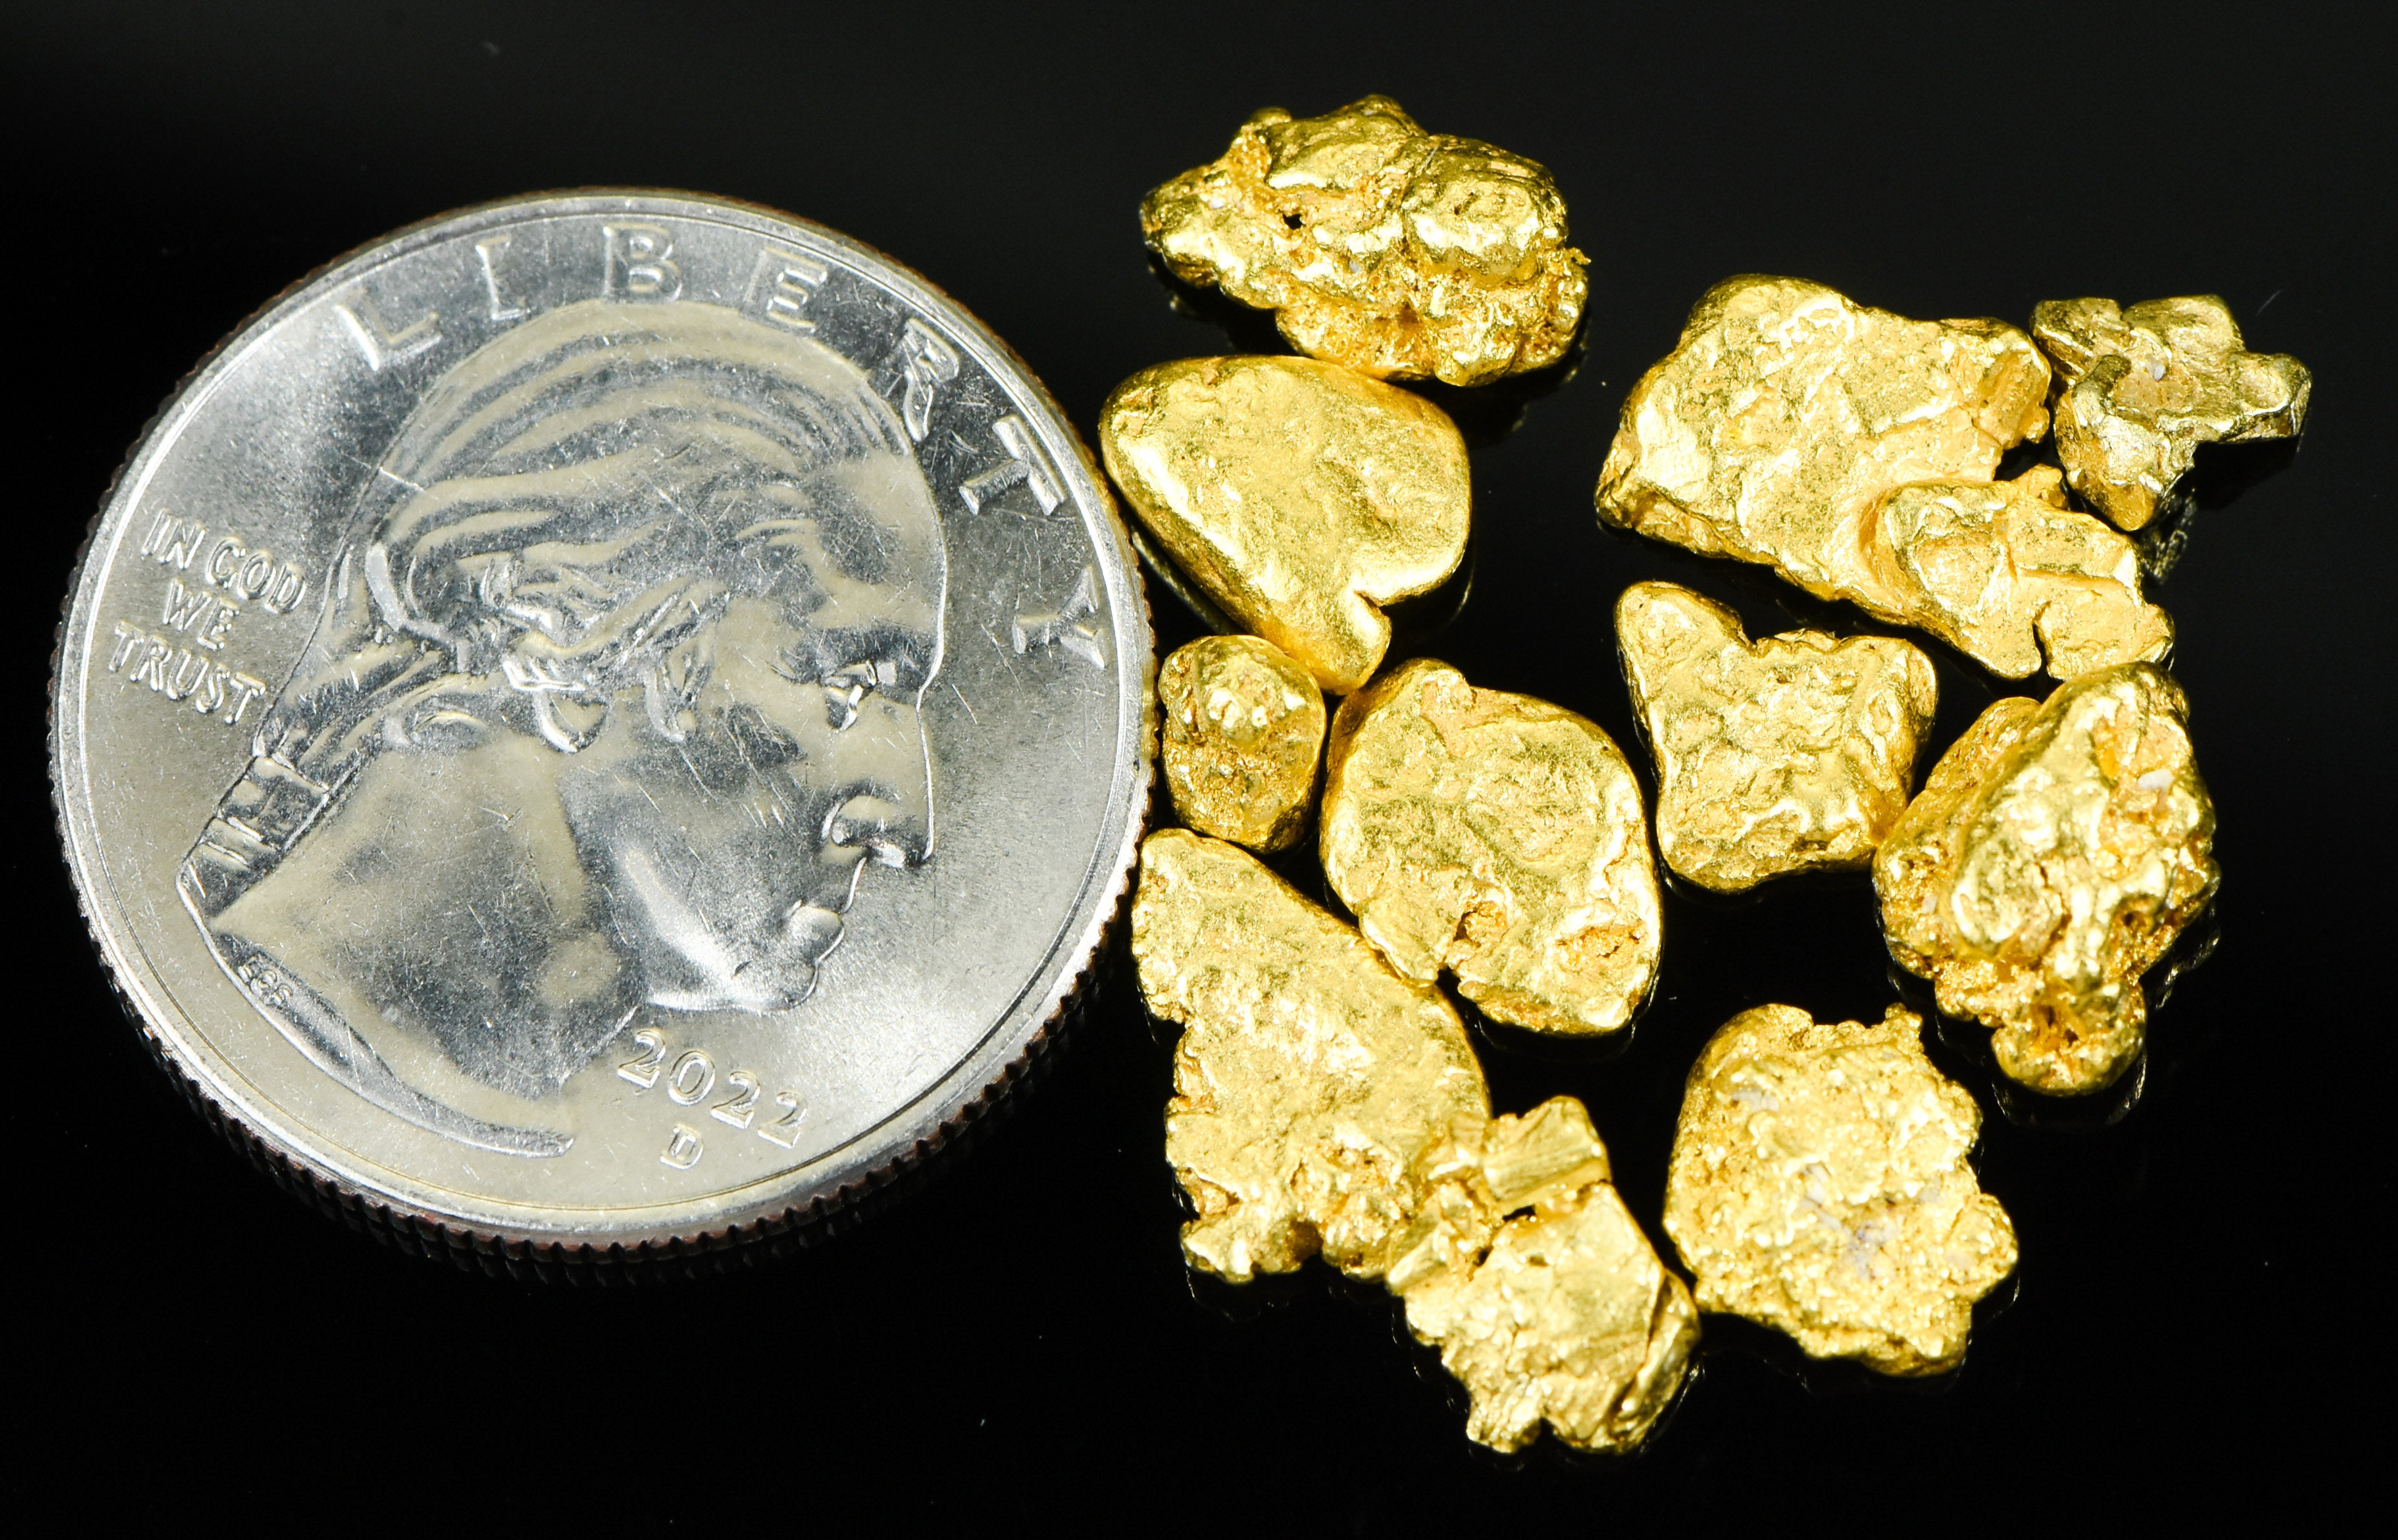 Alaskan-Yukon BC Natural Gold Nugget #4 10 GRAMS OF CLEAN GOLD FLAKES